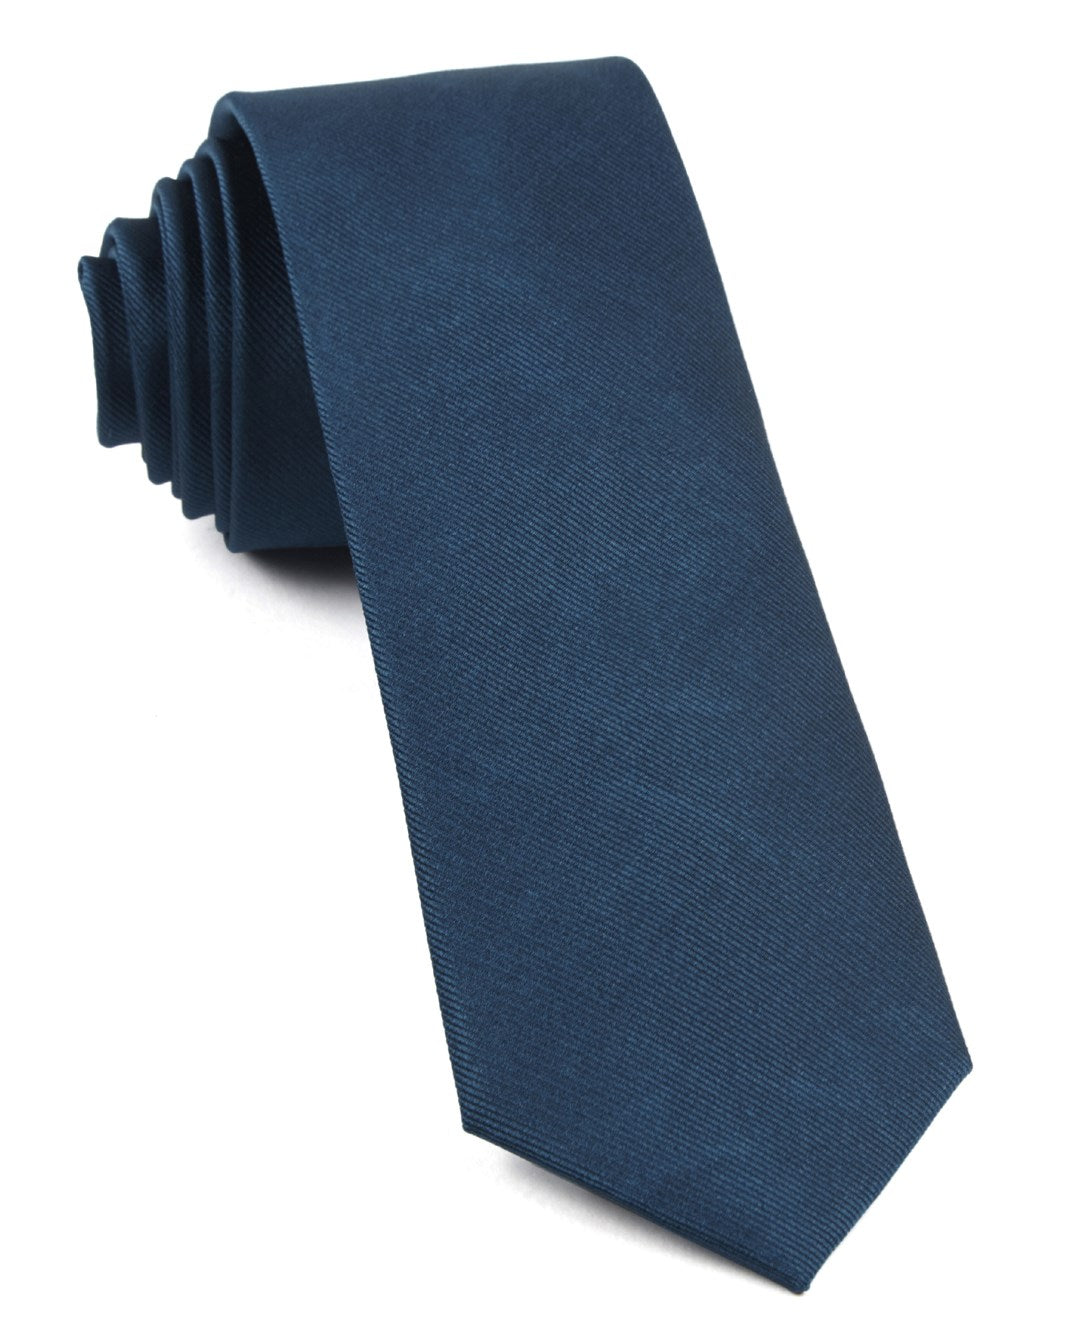 Grosgrain Solid Teal Tie | Silk Ties | Tie Bar